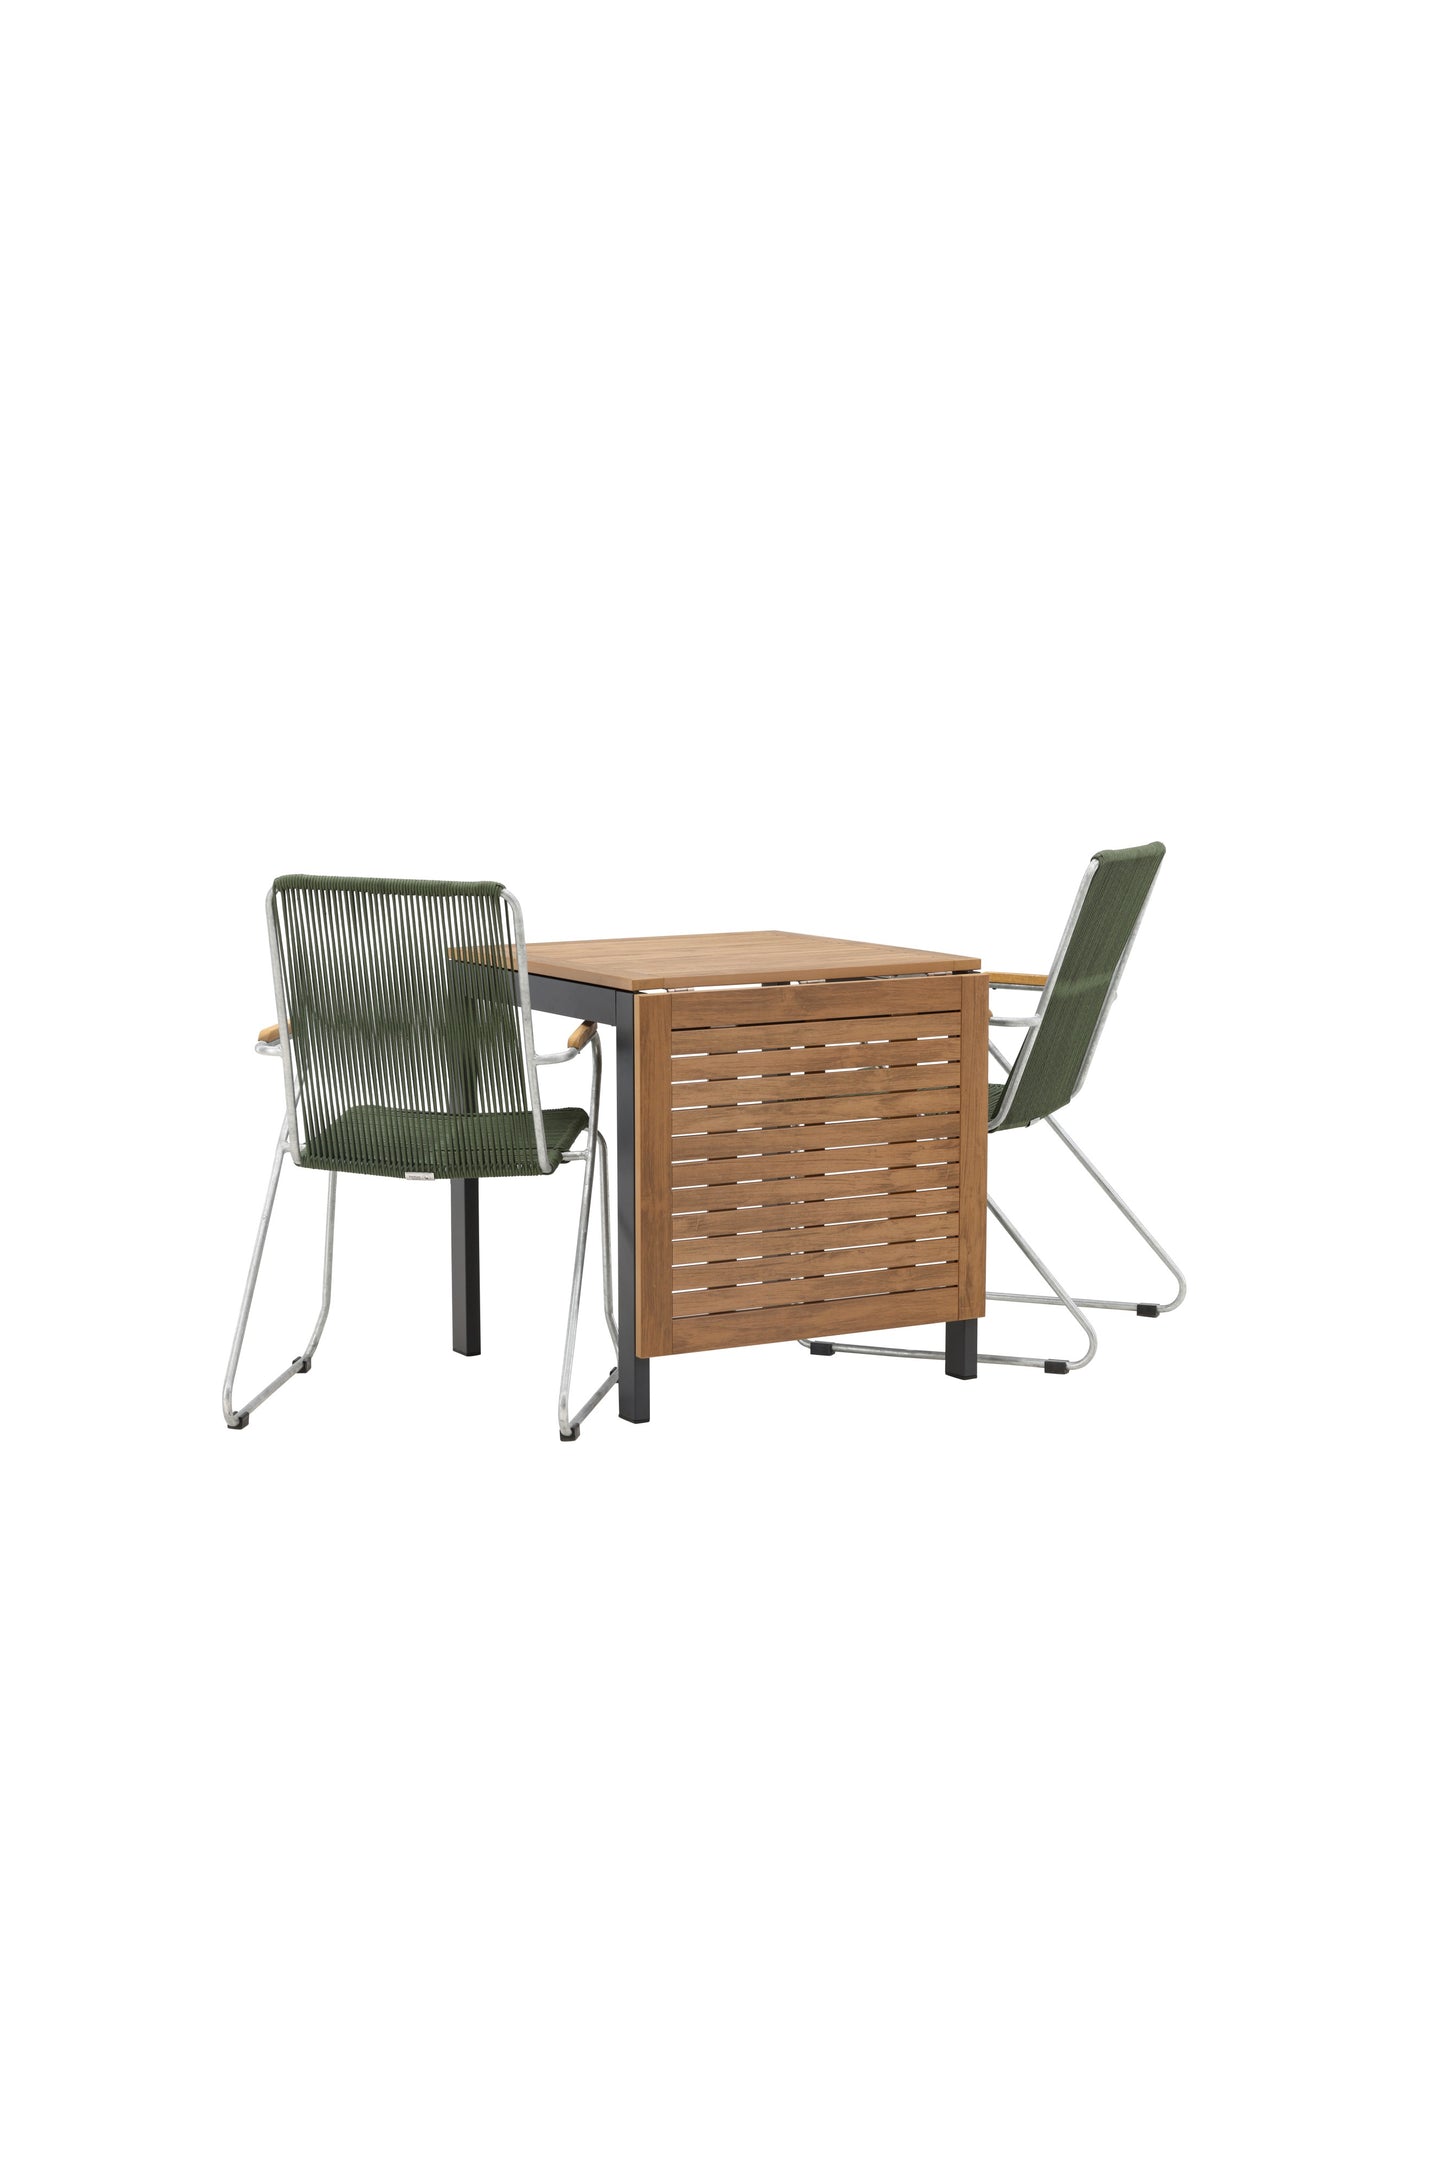 Diego - Cafébord, Aluminium - Sort / Brun Nonwood - Rektangulær 70*70/130* + Bois stol Stål - Sølv / Grønt Reb